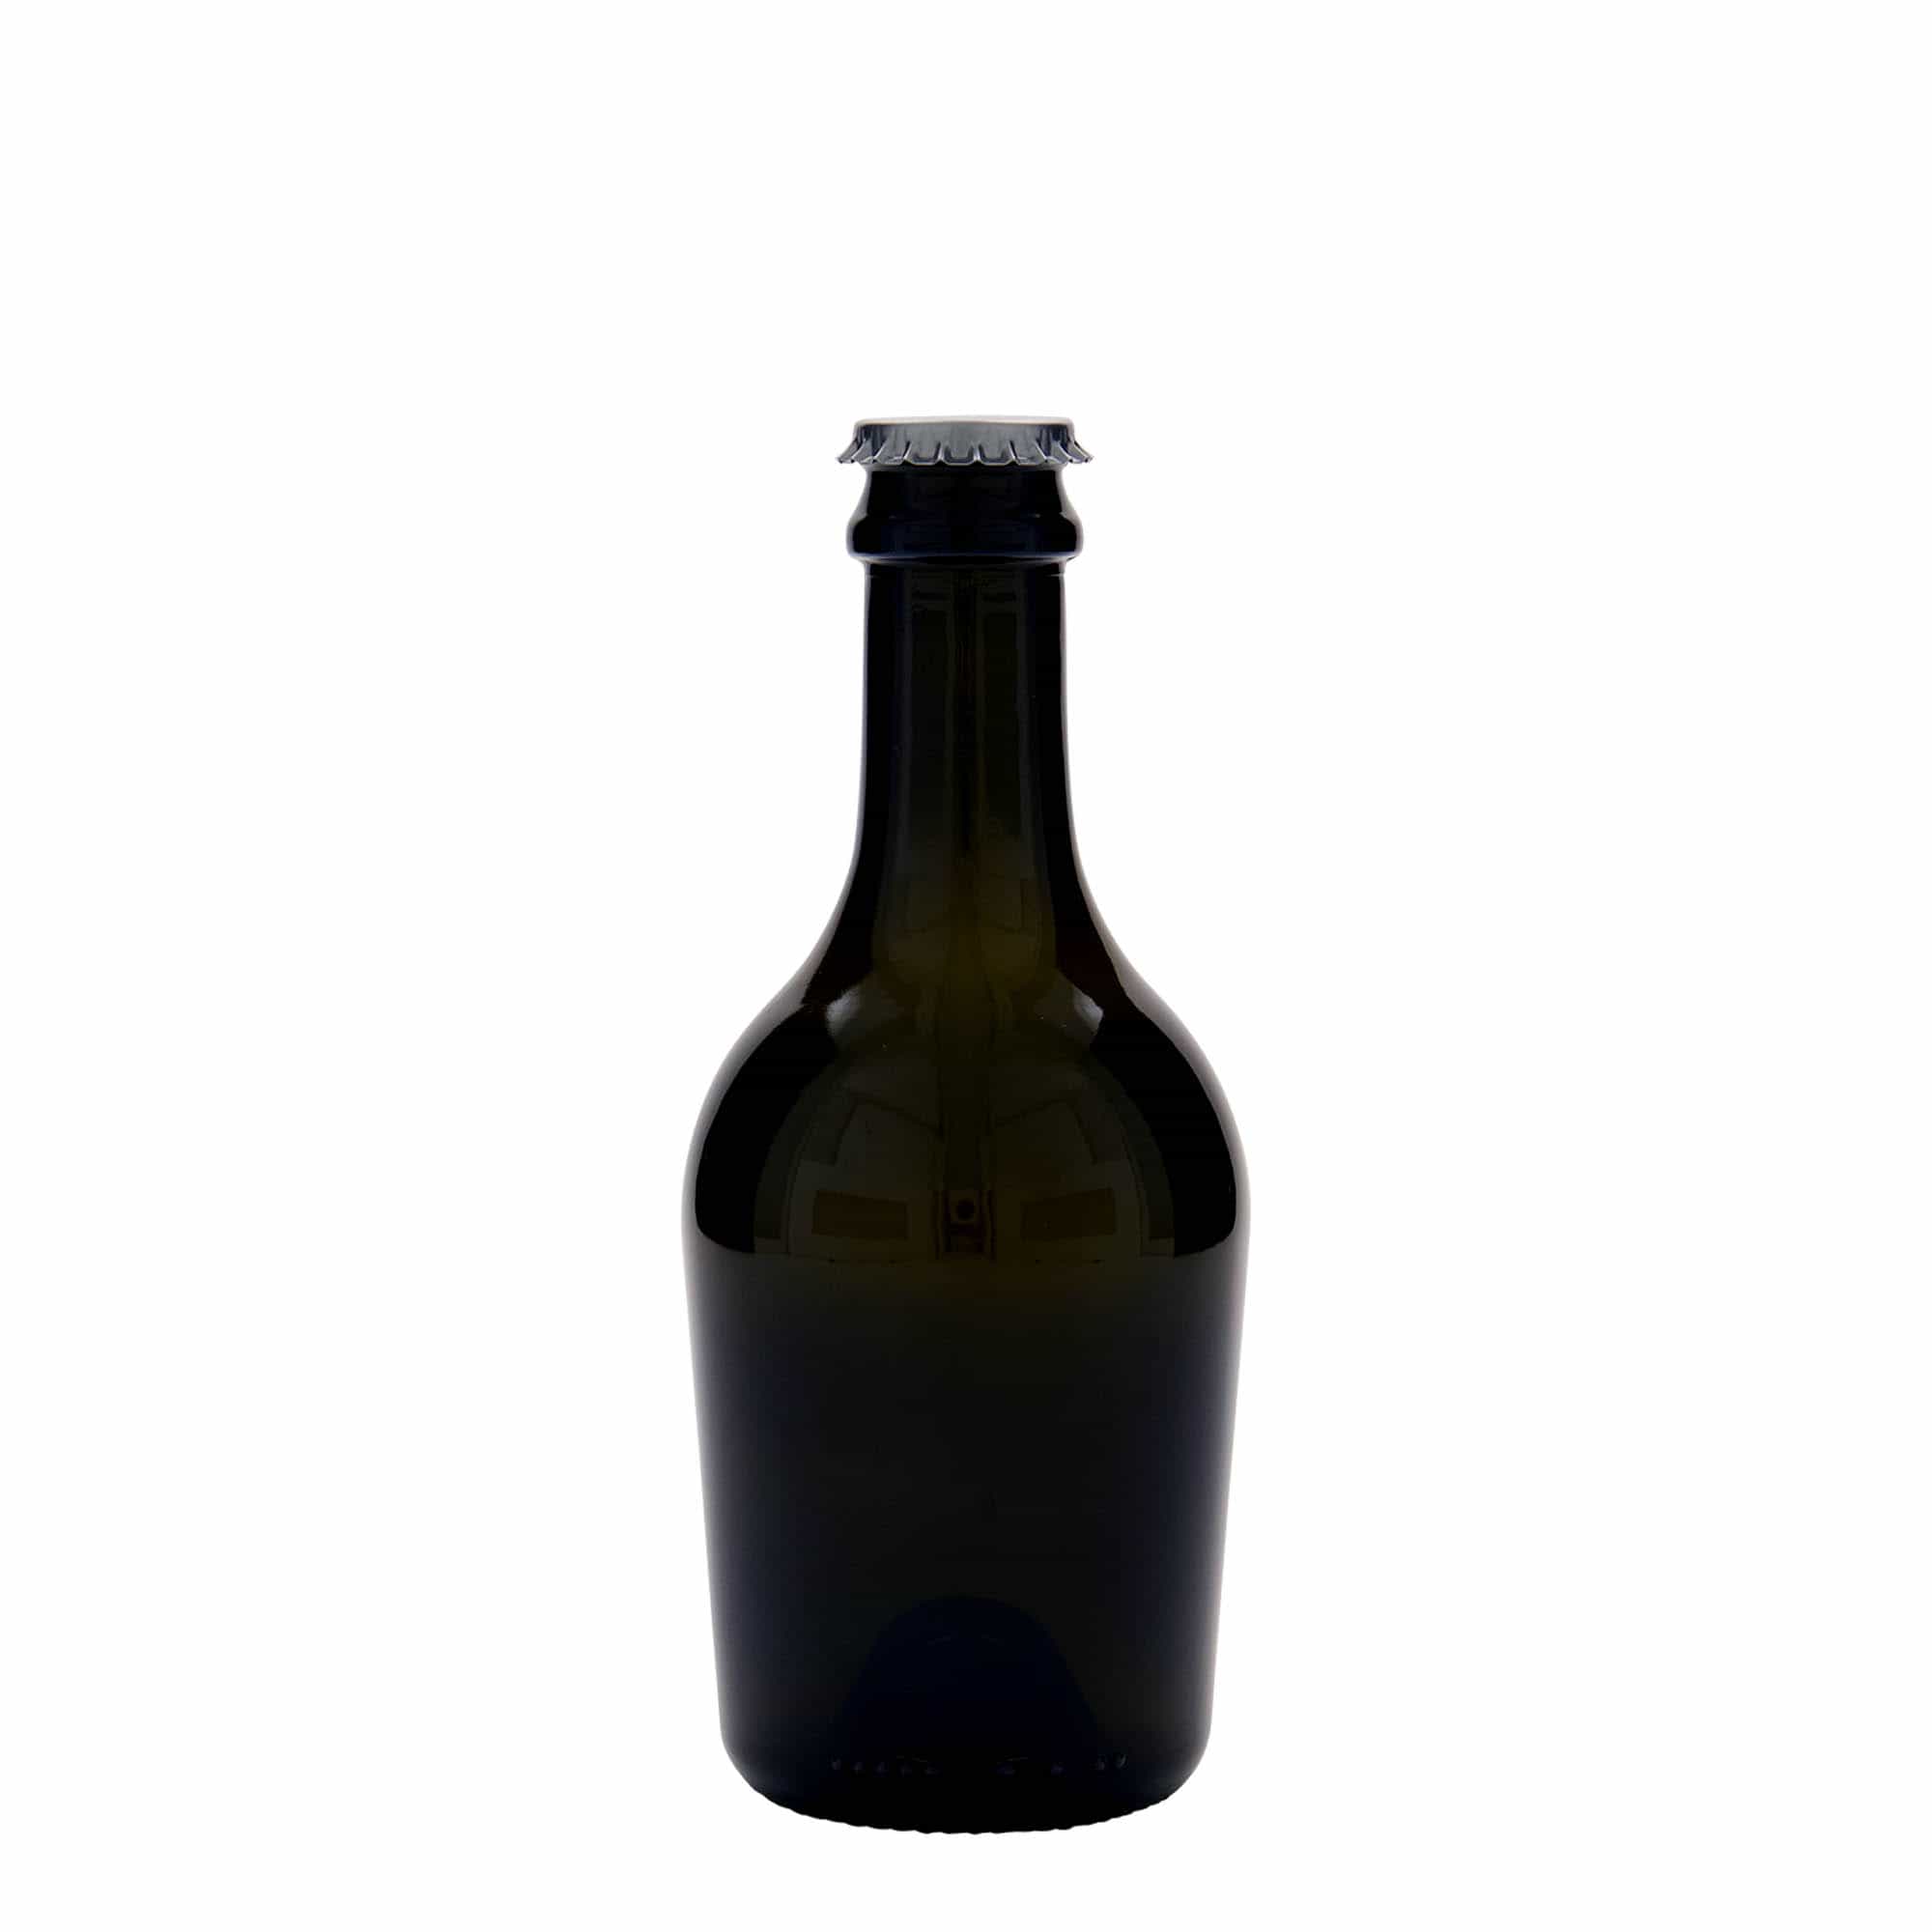 330 ml butelka do wina/szampana 'Butterfly', szkło, kolor zielony antyczny, zamknięcie: kapsel